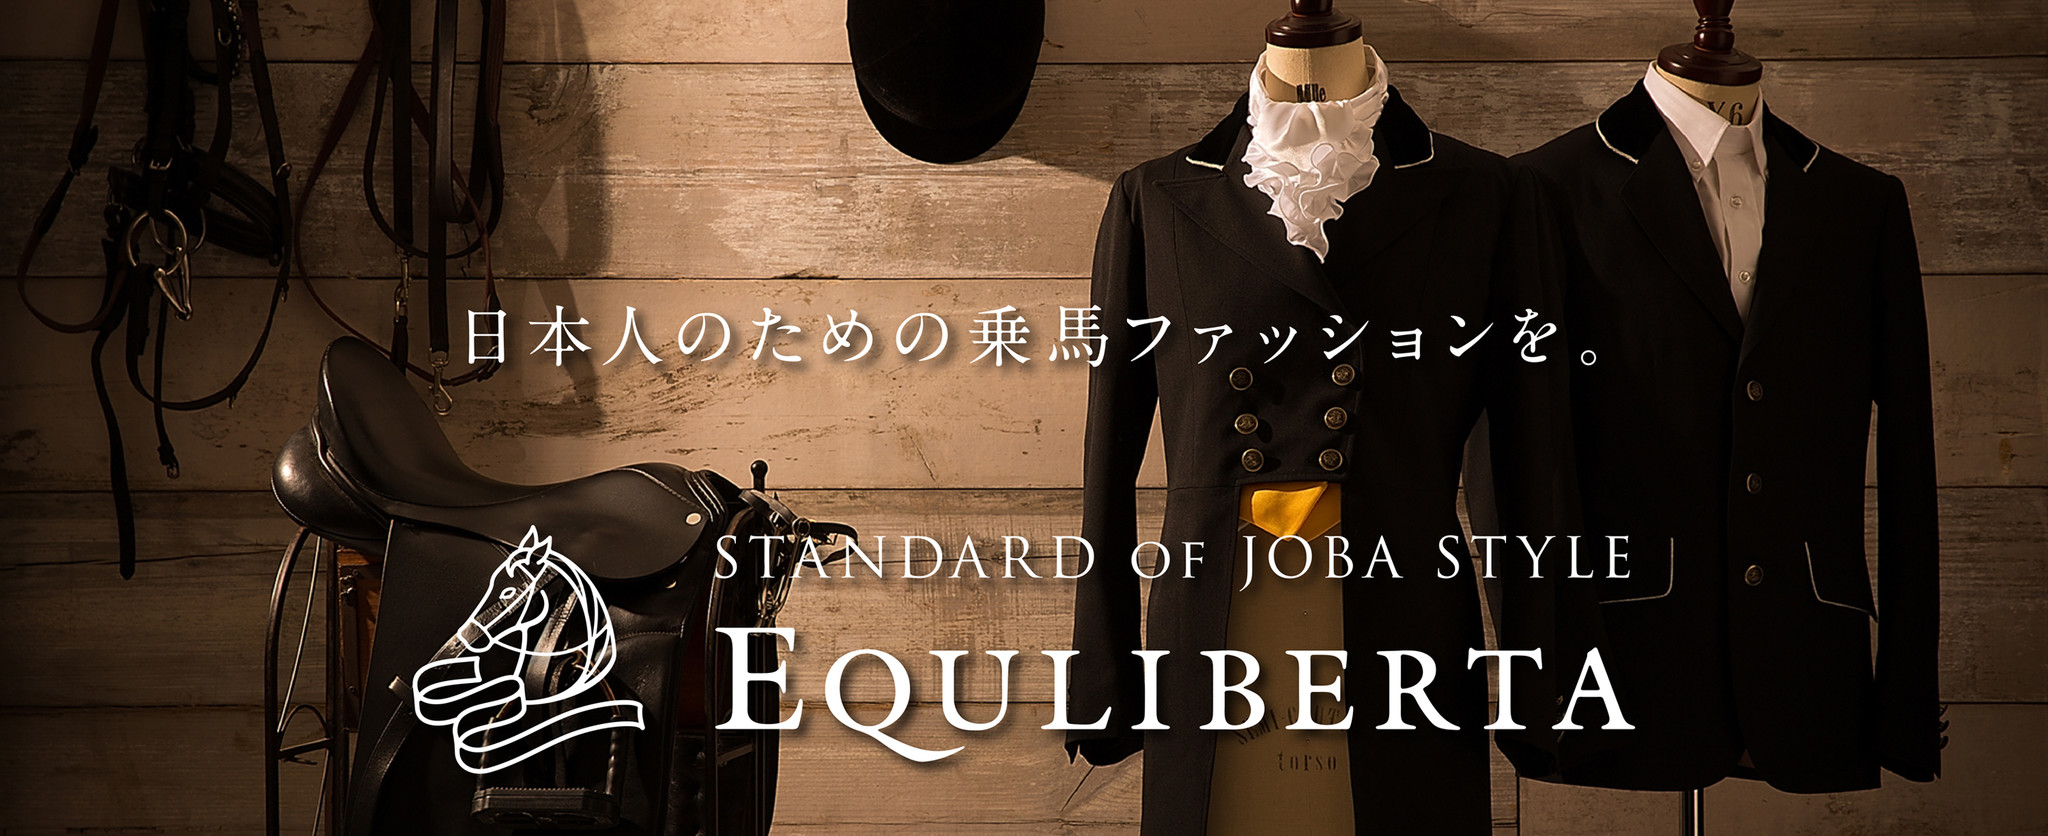 日本人のための乗馬ファッションブランド「EQULIBERTA（エクリベルタ 